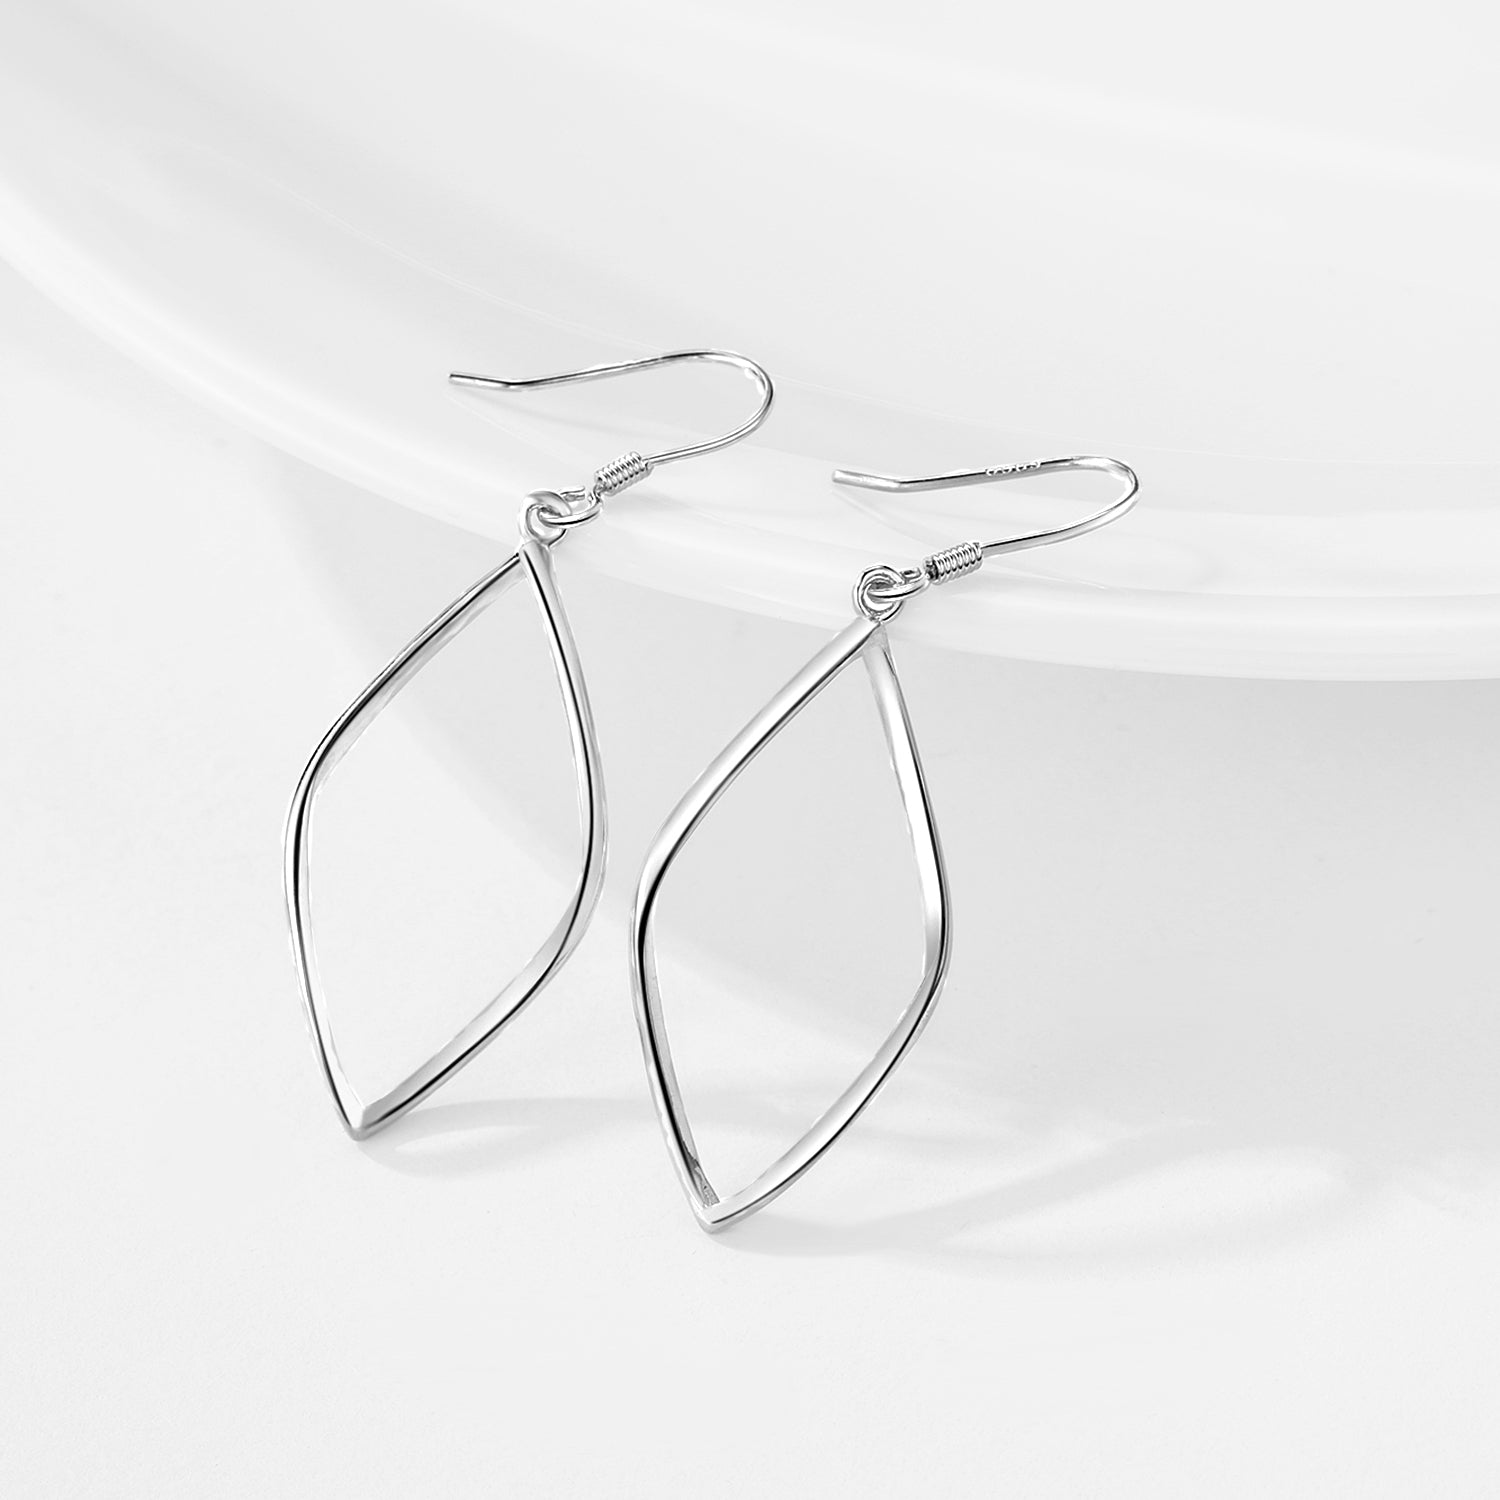 Popular New Professional Design Earring  Luxury Jewelry Earring for Women